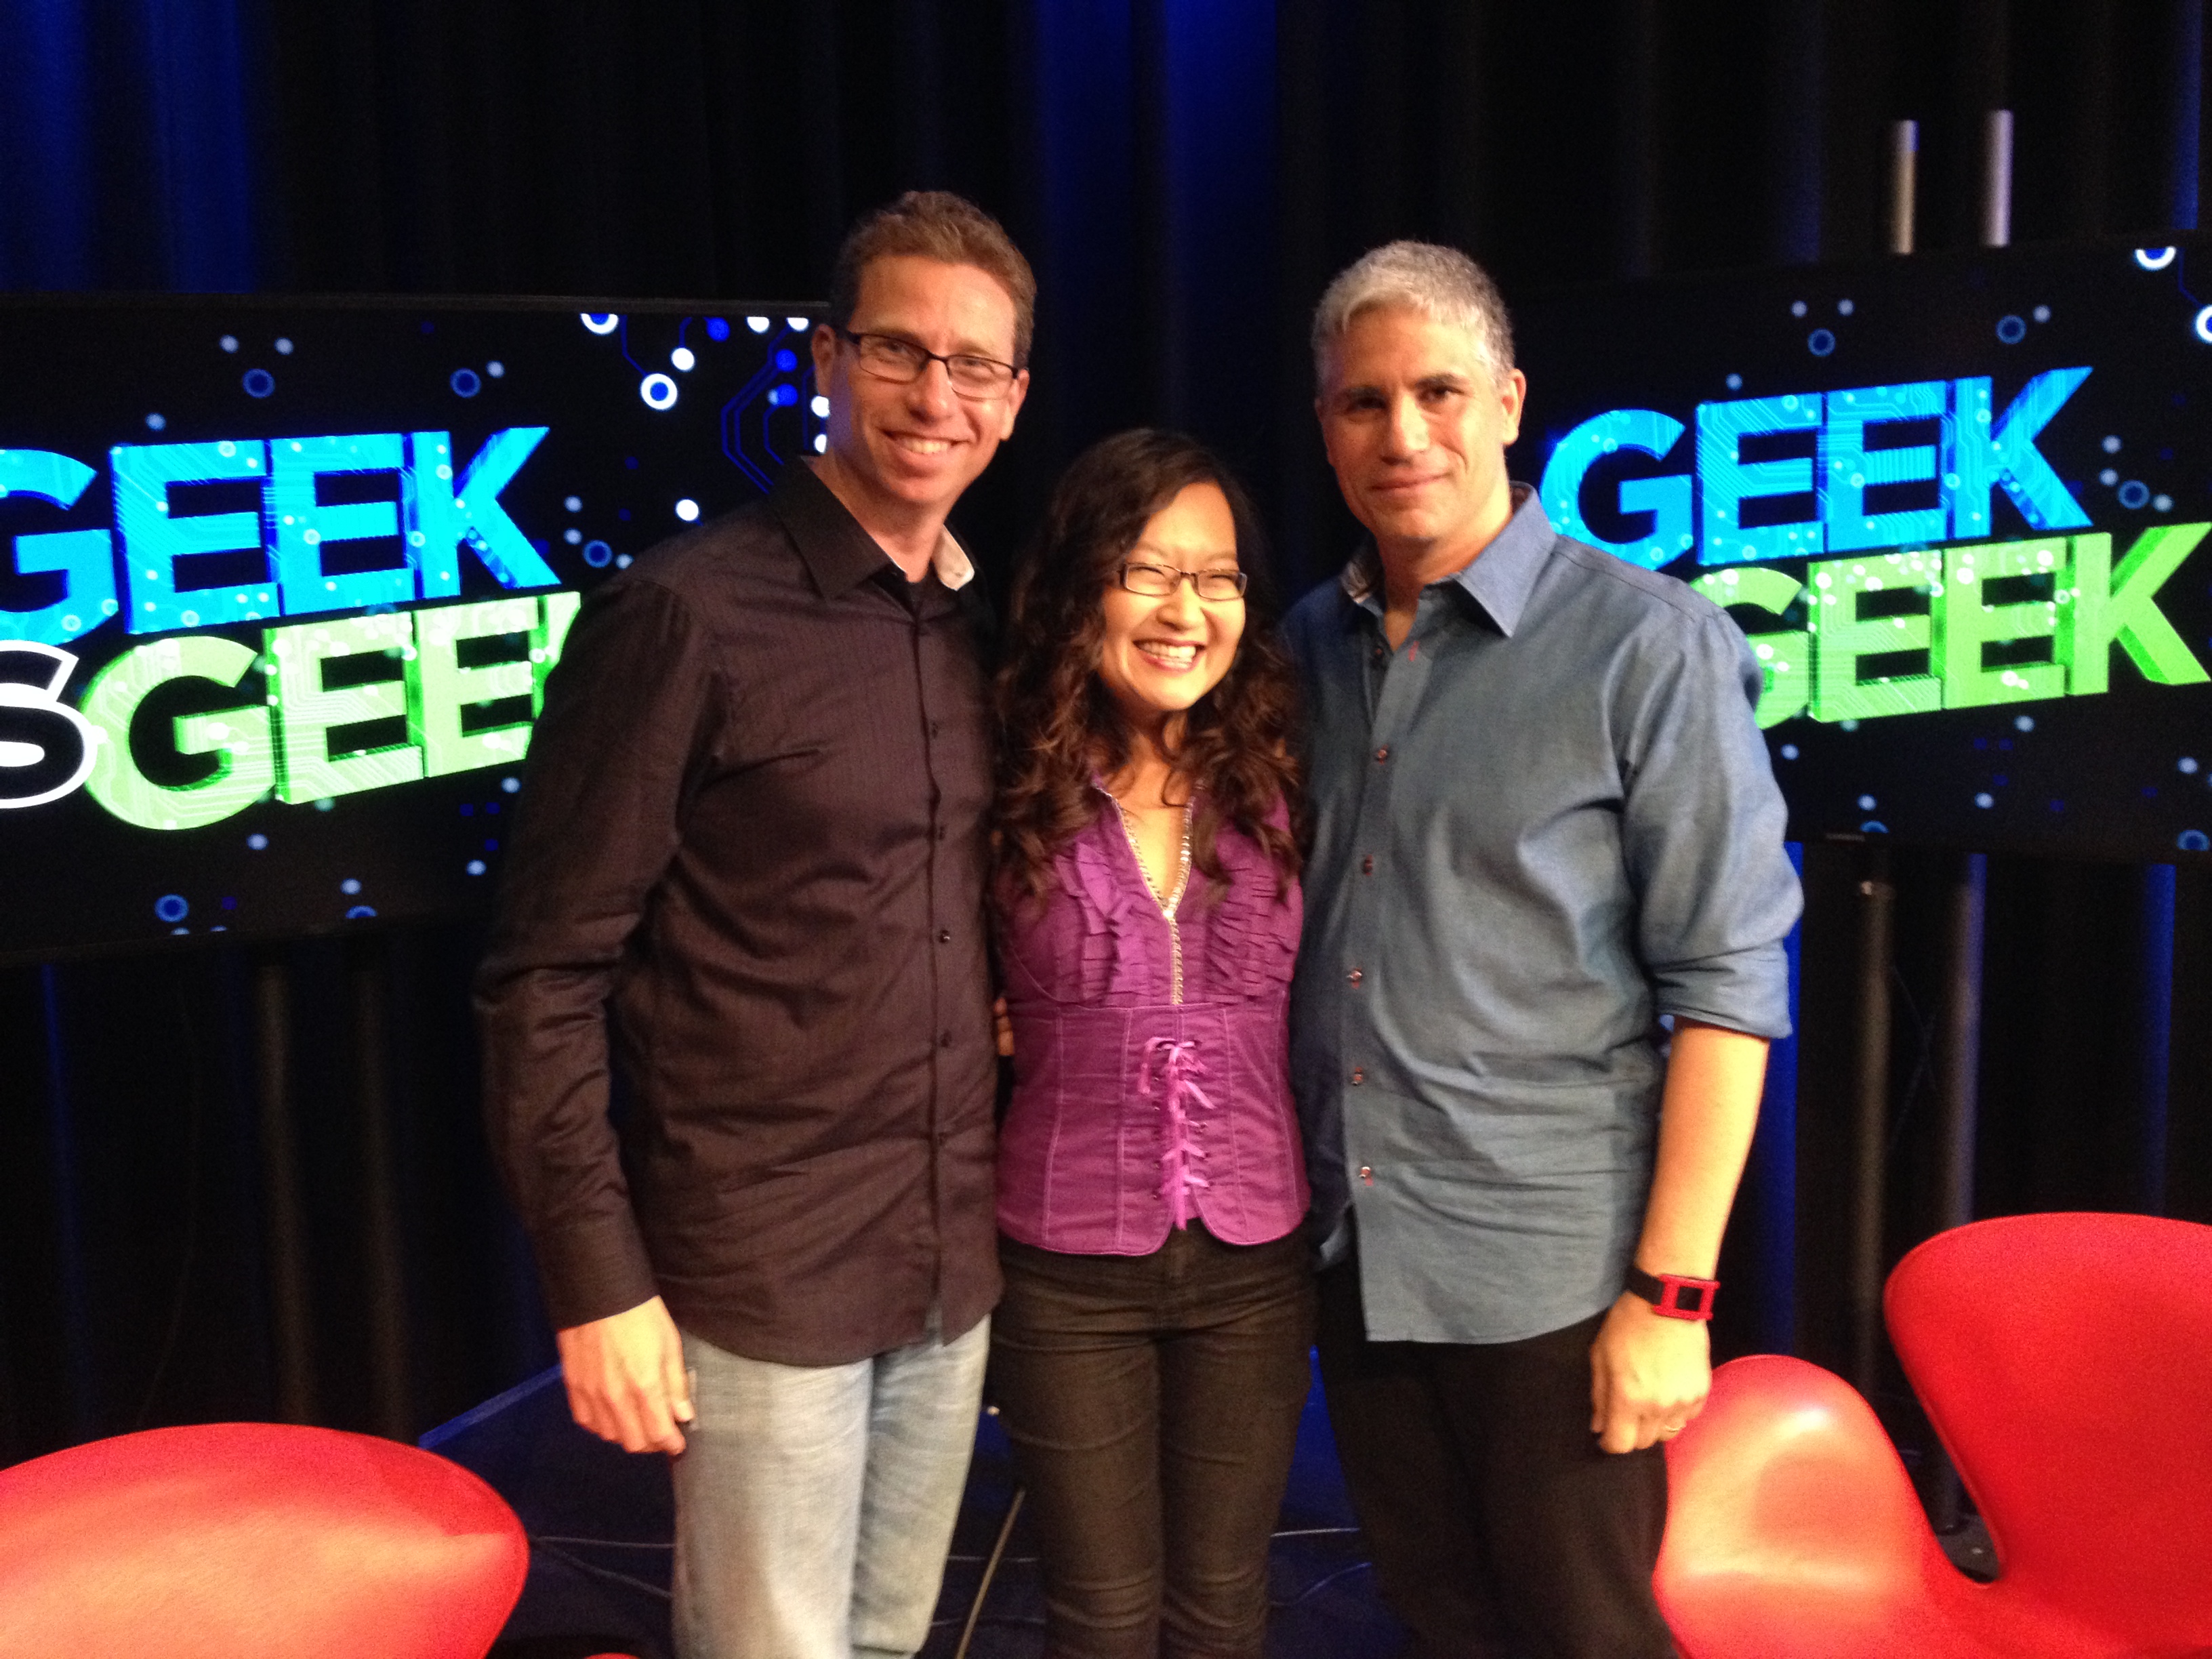 Helen Hong is the series host of Geek Vs Geek on ehow.com